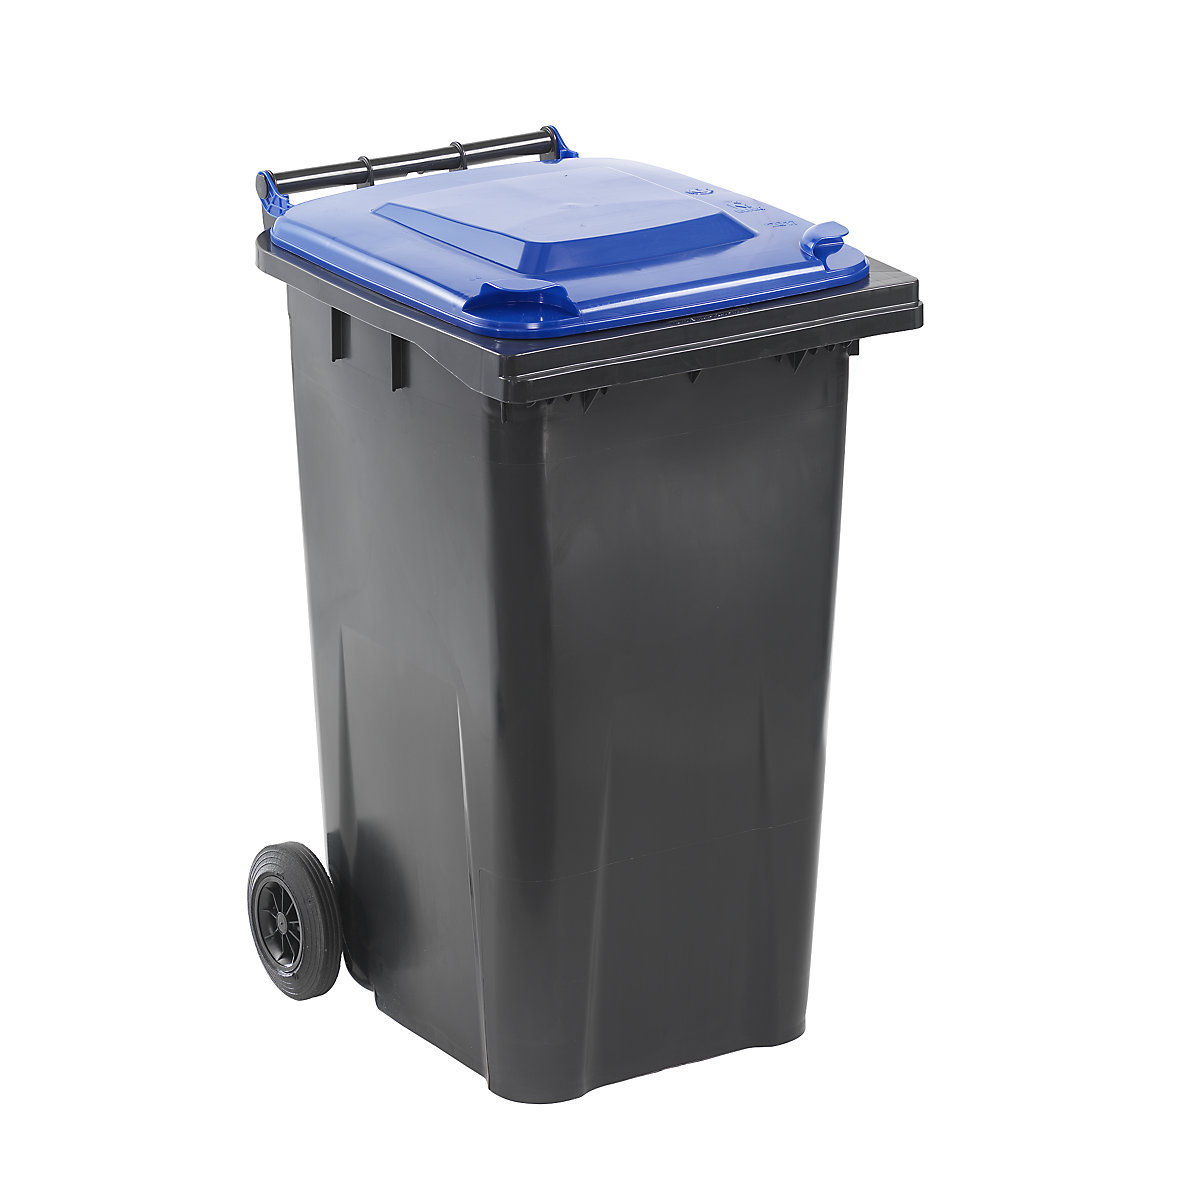 Contentor de lixo conforme a norma DIN EN 840, capacidade 240 l, LxAxP 580 x 1100 x 740 mm, antracite, tampa azul